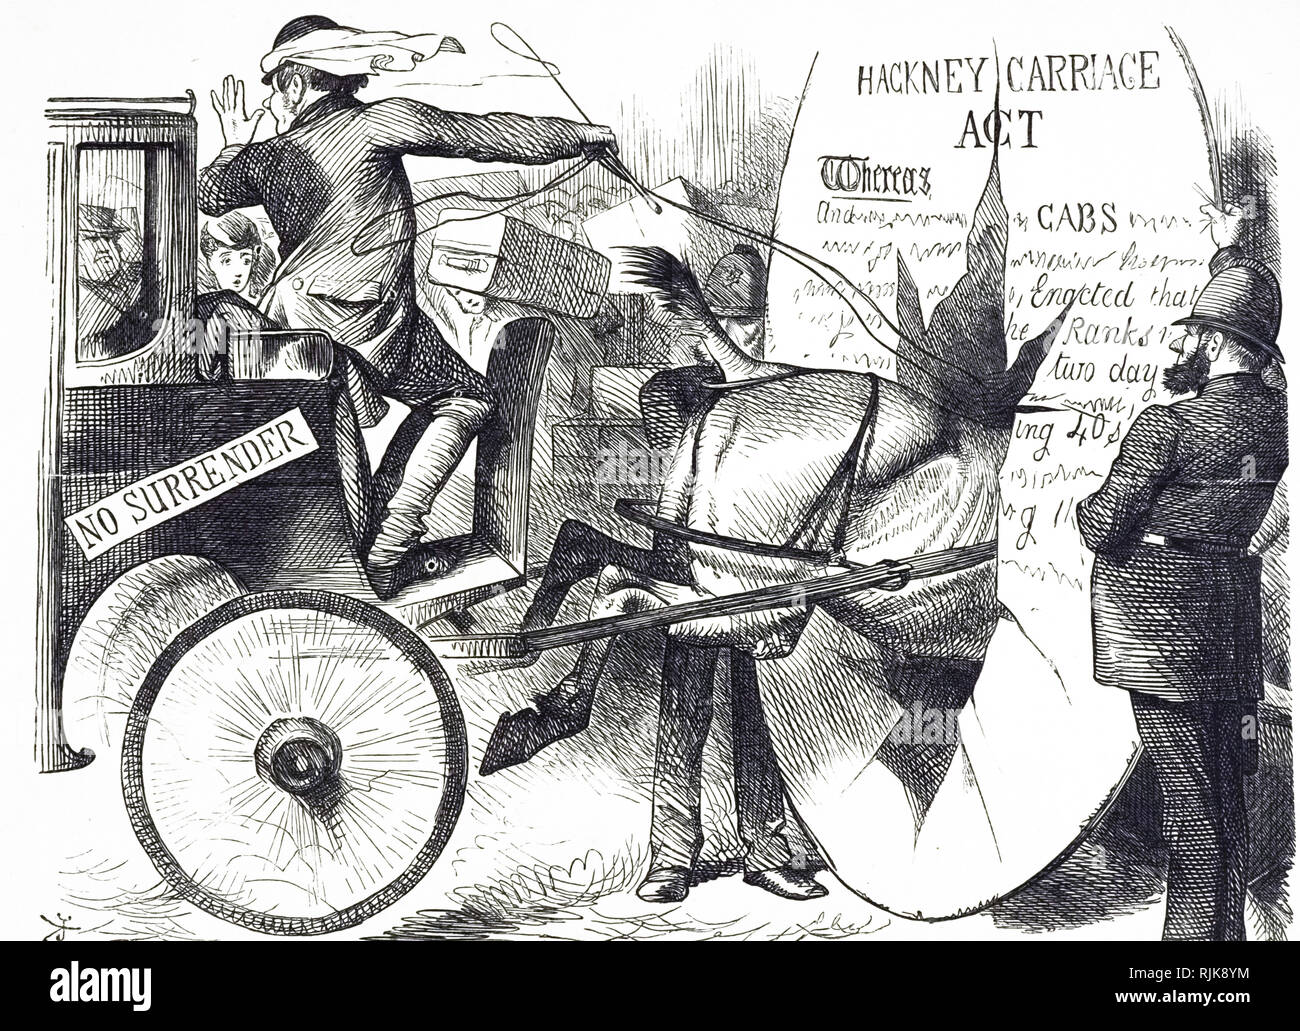 Ein Cartoon kommentierte die Hackney Carriage Act 1843. Vom 19. Jahrhundert Stockfoto